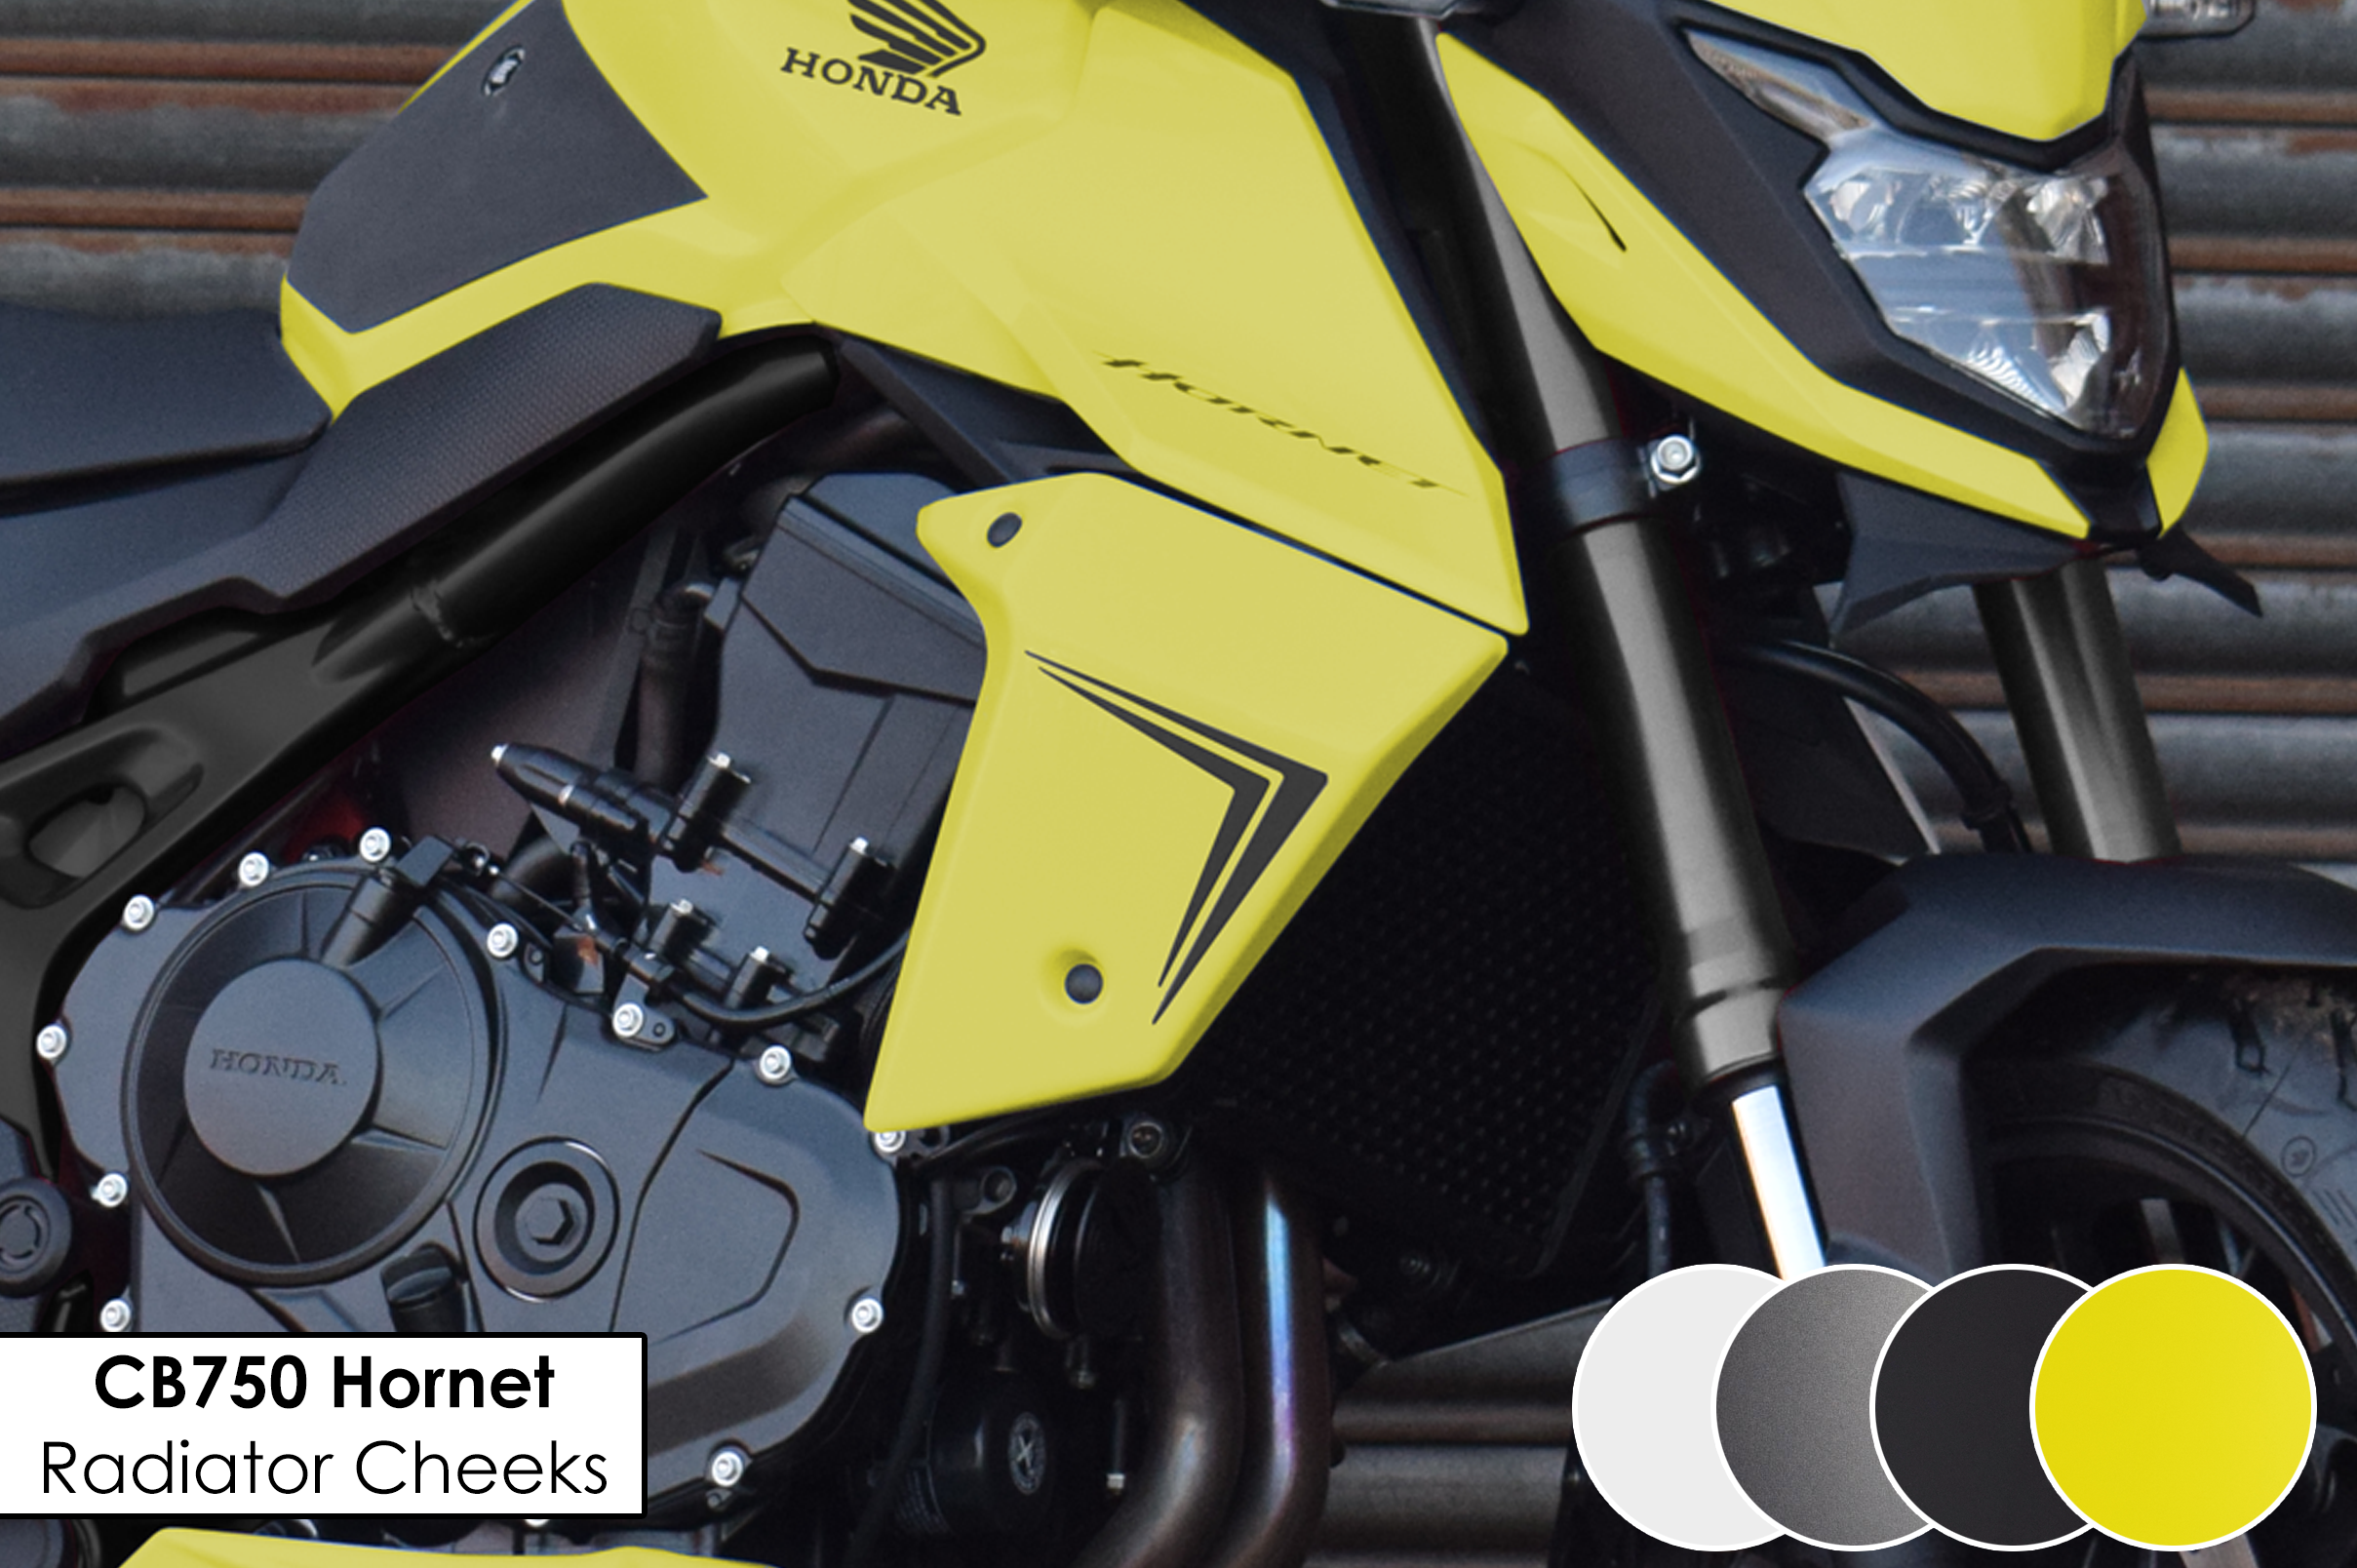 Radiator Cheeks For The Honda CB750 Hornet!